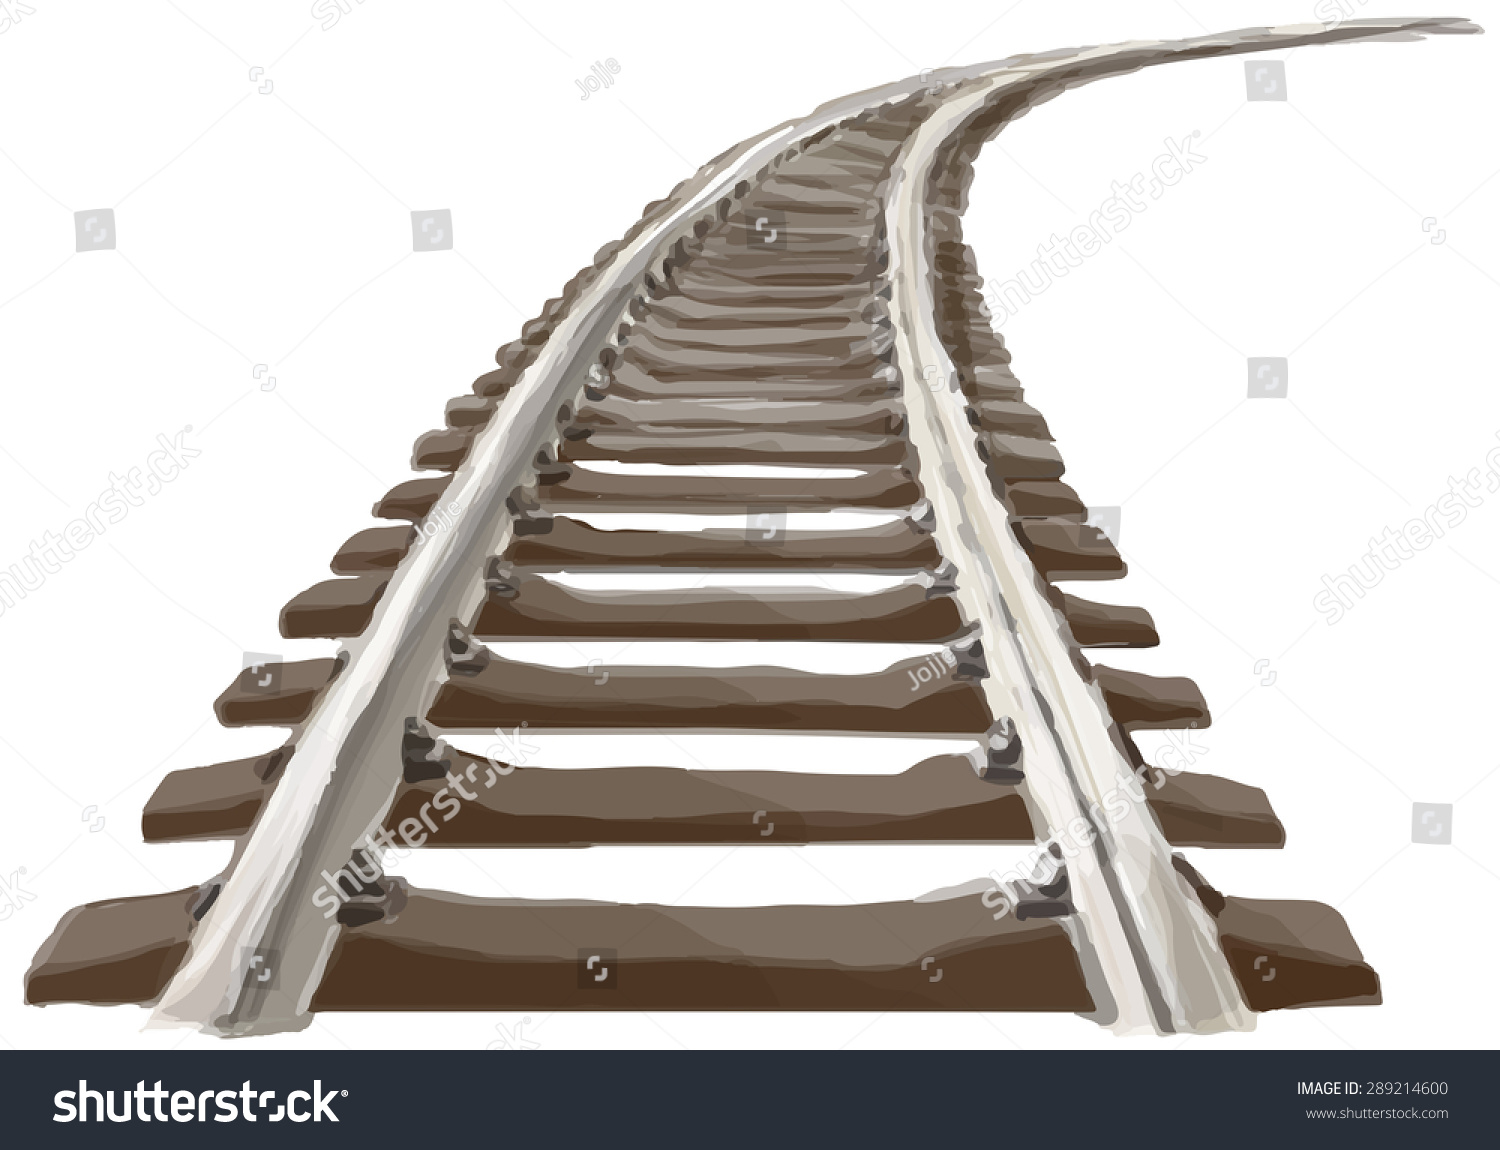 弯曲的无尽的火车轨道。透视图的弯曲的火车轨